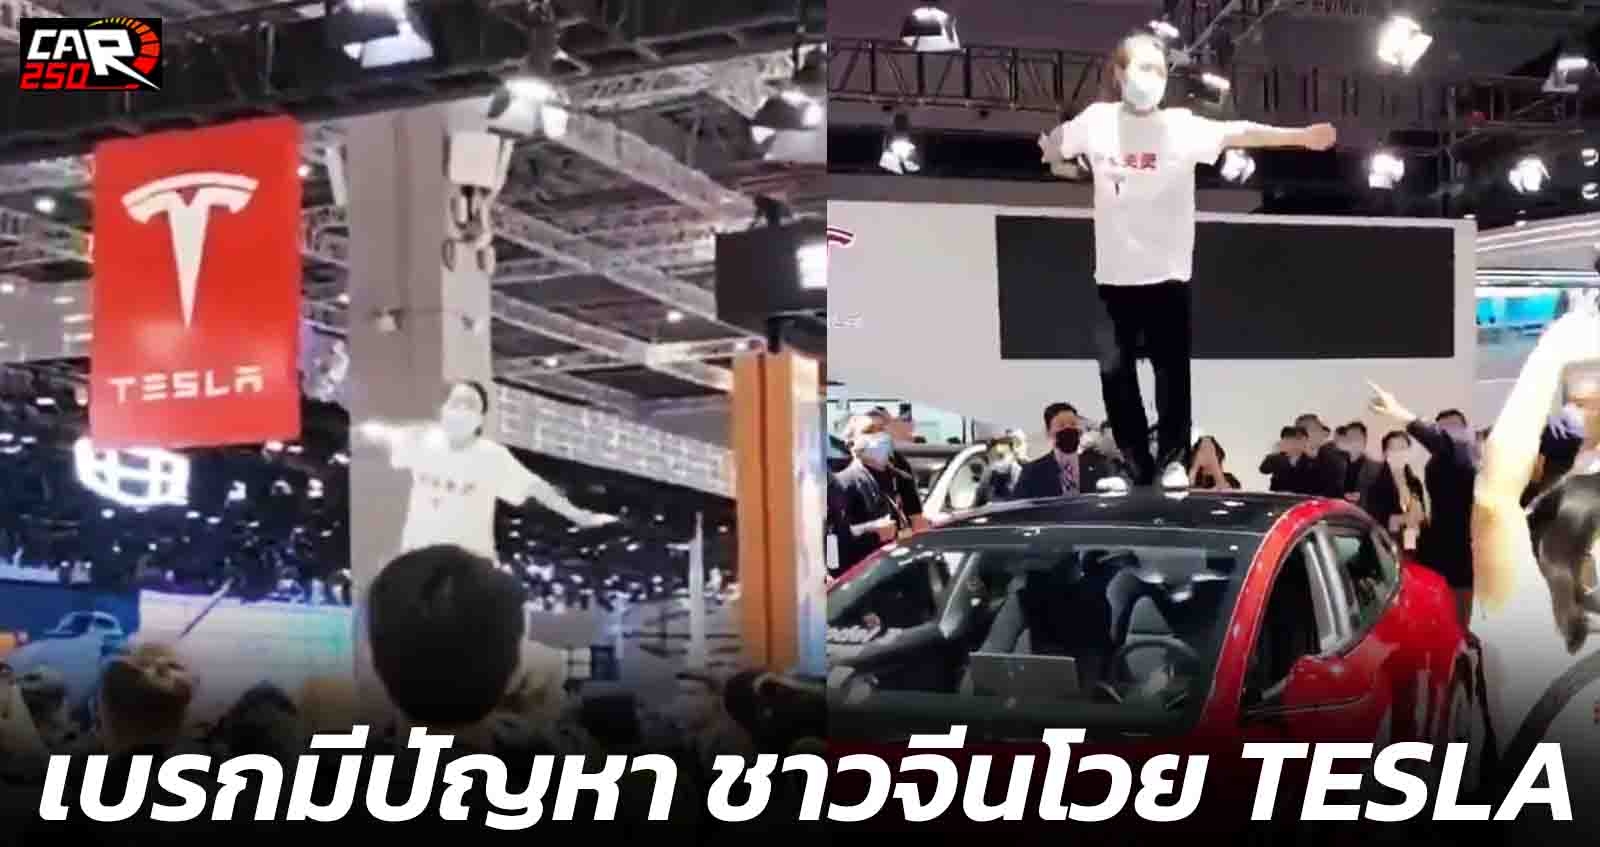 สาวจีนโวย เบรกมือปัญหา ยืนบนหลังคา Tesla ในงาน Shanghai Auto Show 2021 สุดยิ่งใหญ่ (VDO)